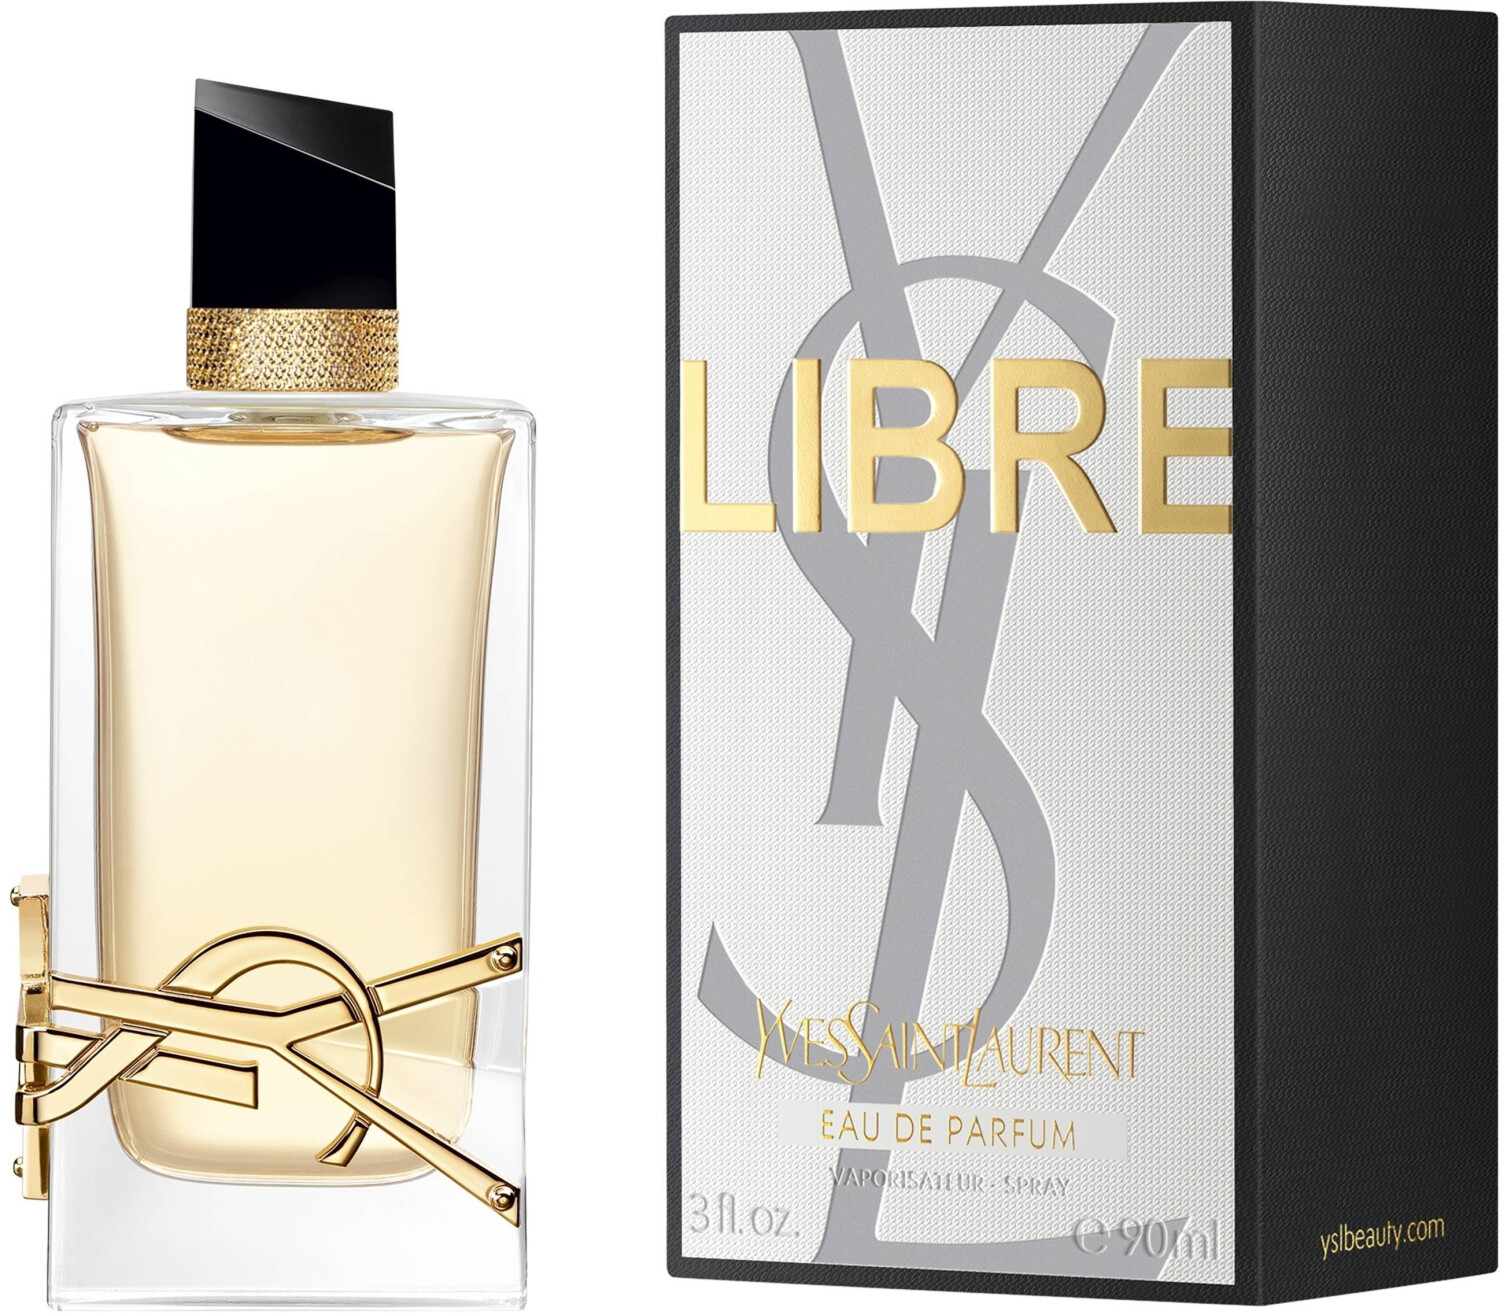 Buy YSL Libre Eau de Parfum (90ml) from £83.76 (Today) – Best Deals on